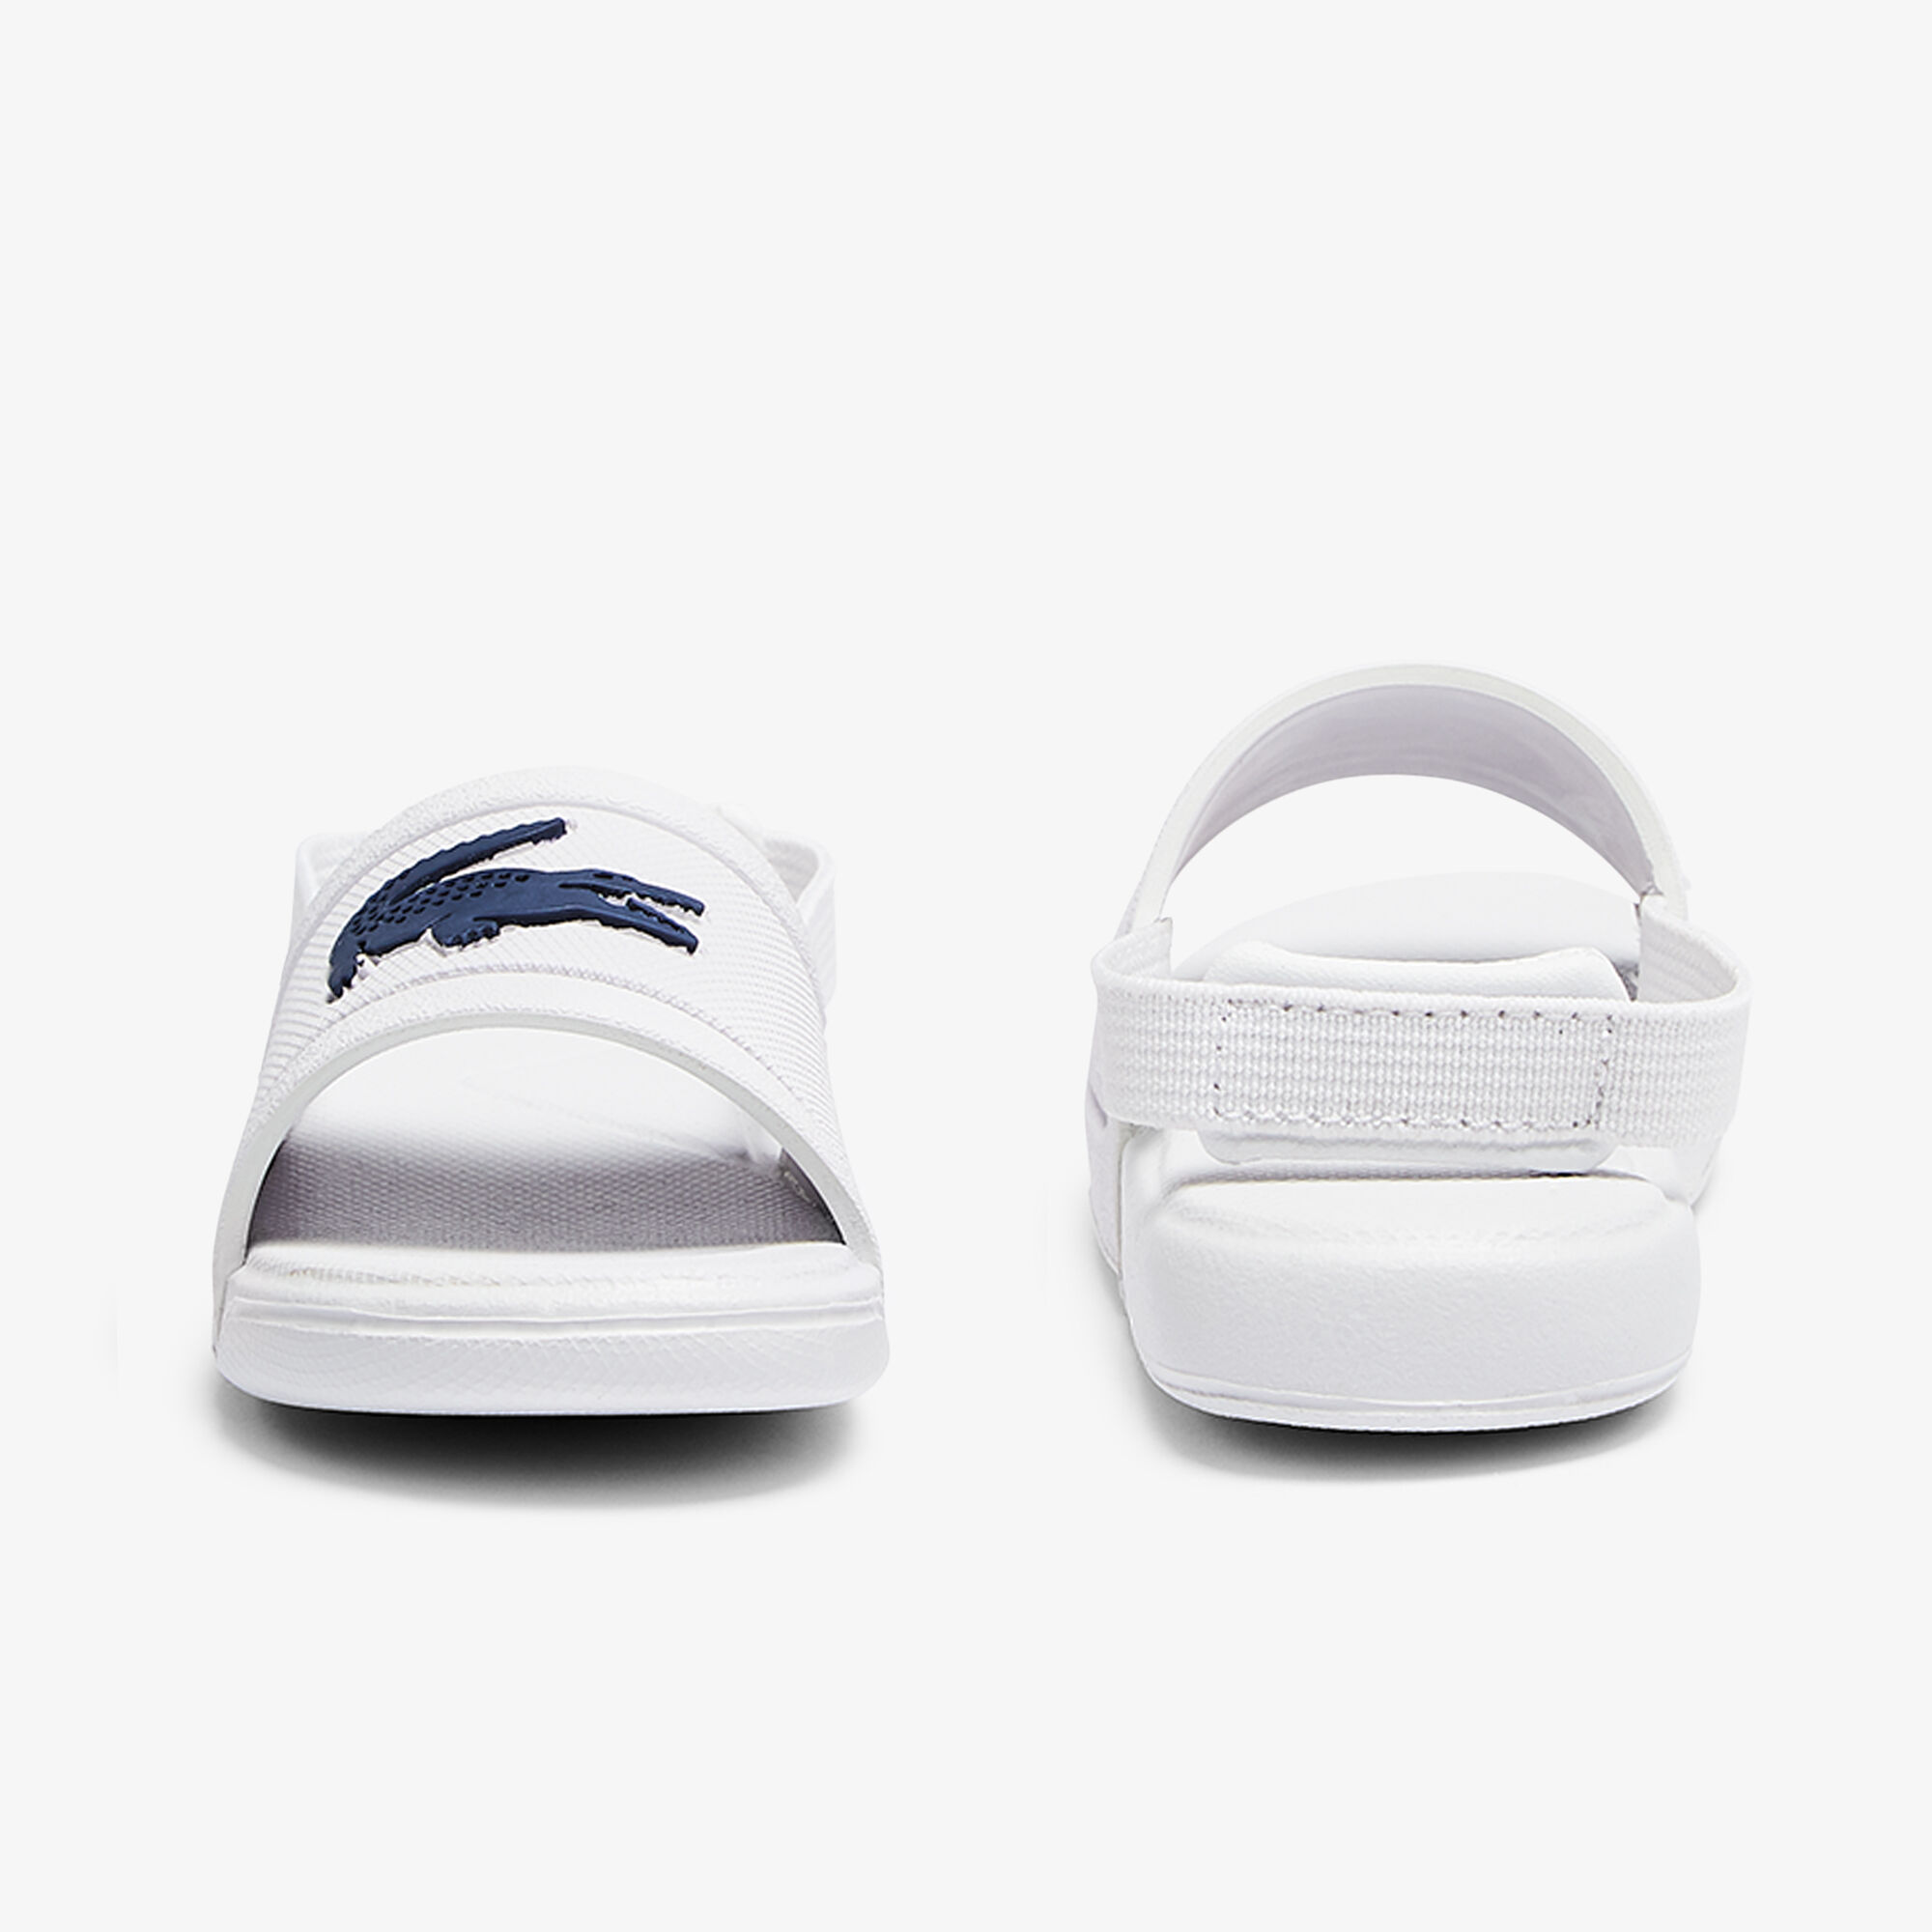 Infants' L.30 Slide Slip-on Sandals